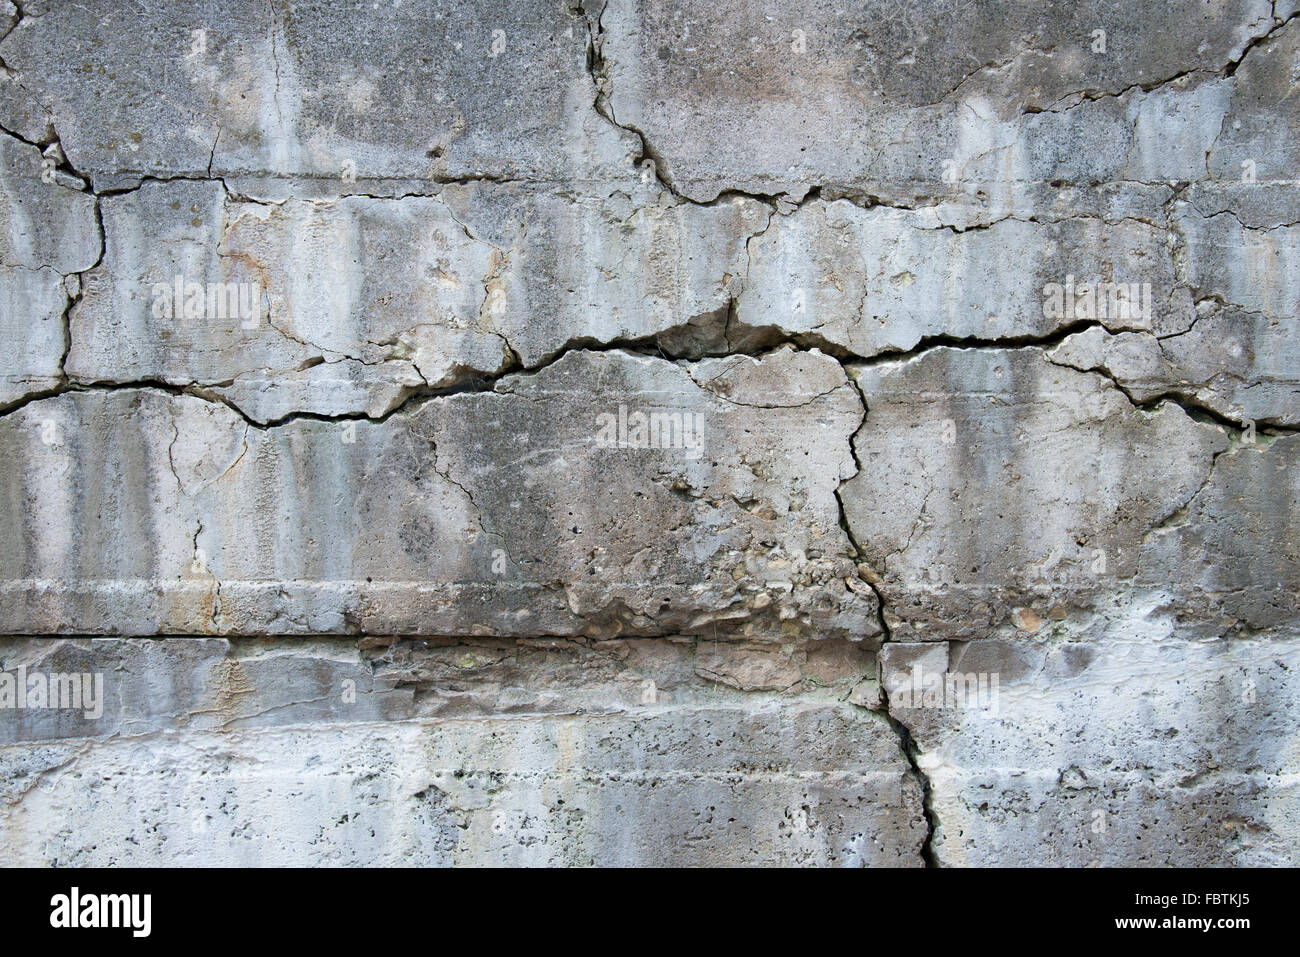 Un antico muro di cemento ha sviluppato molti la formazione di cricche interessanti modelli e design. Foto Stock